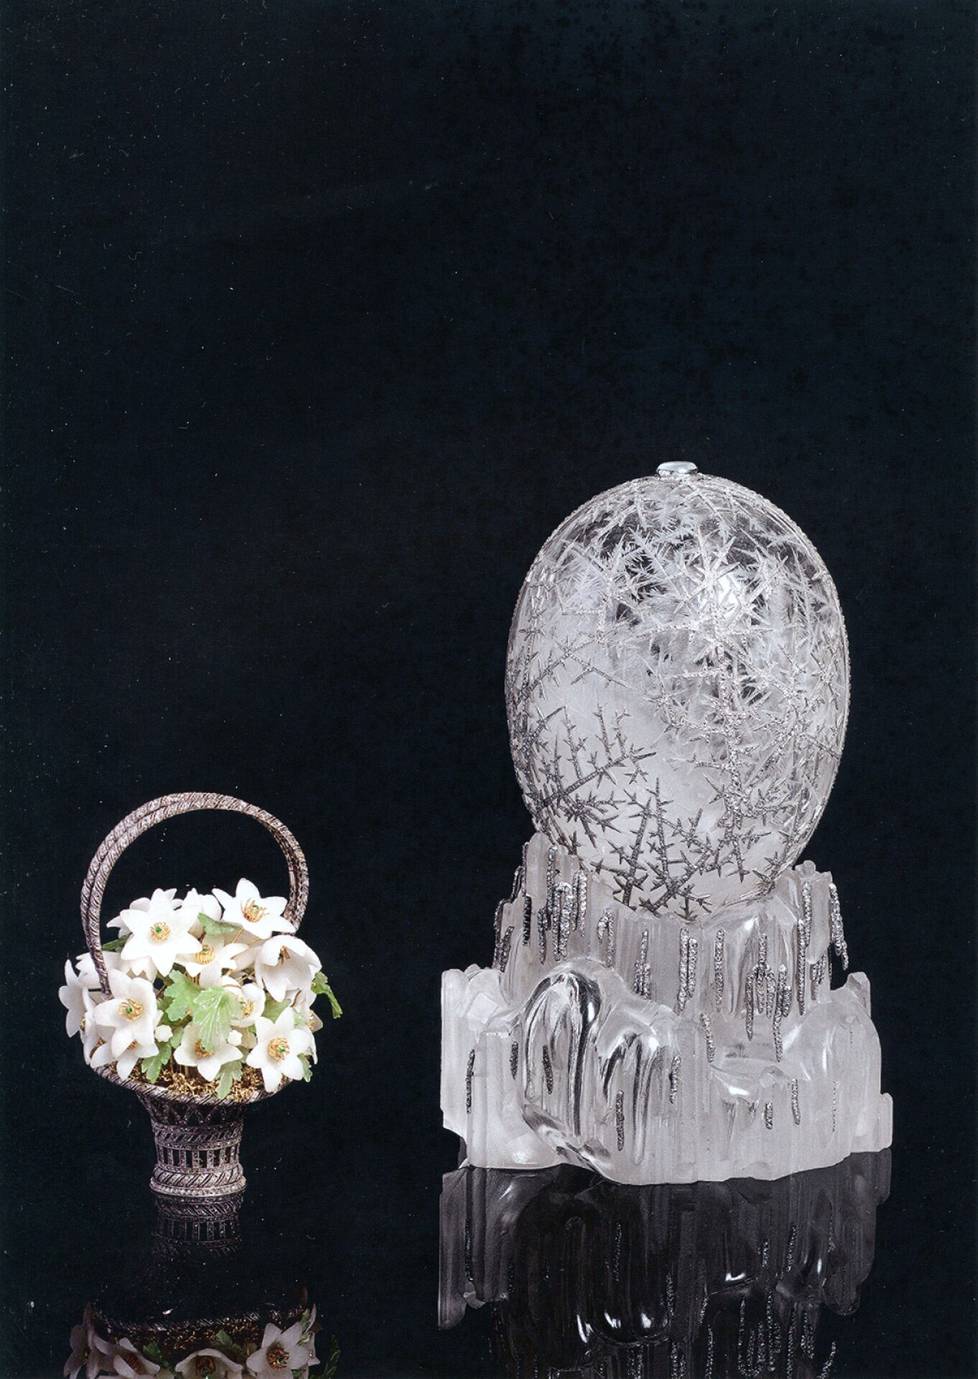 Talvimuna on tyyliltään pelkistetympi kuin Fabergén monet aiemmat keisarilliset pääsiäismunat. Kokonaisuuteen on silti saatu upotettua kolmisentuhatta pienenpientä timanttia.